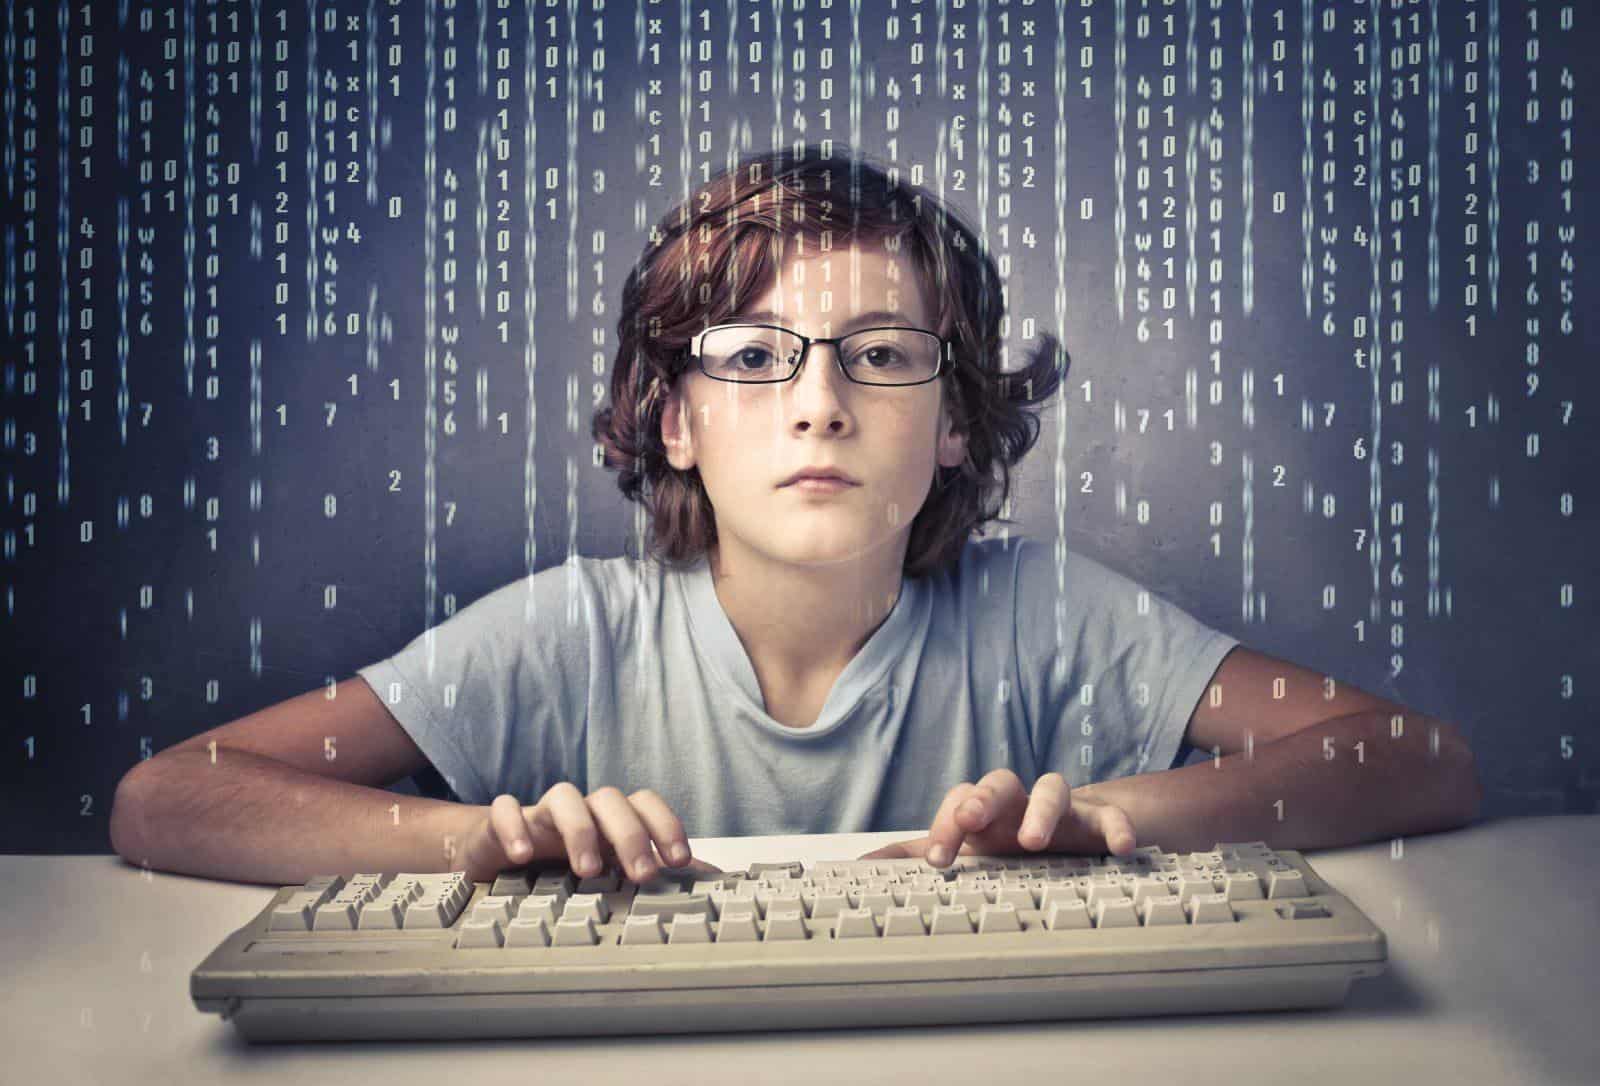 ۵ دلیل مهم برای یادگیری کدنویسی توسط کودکان در سال ۲۰۲۲